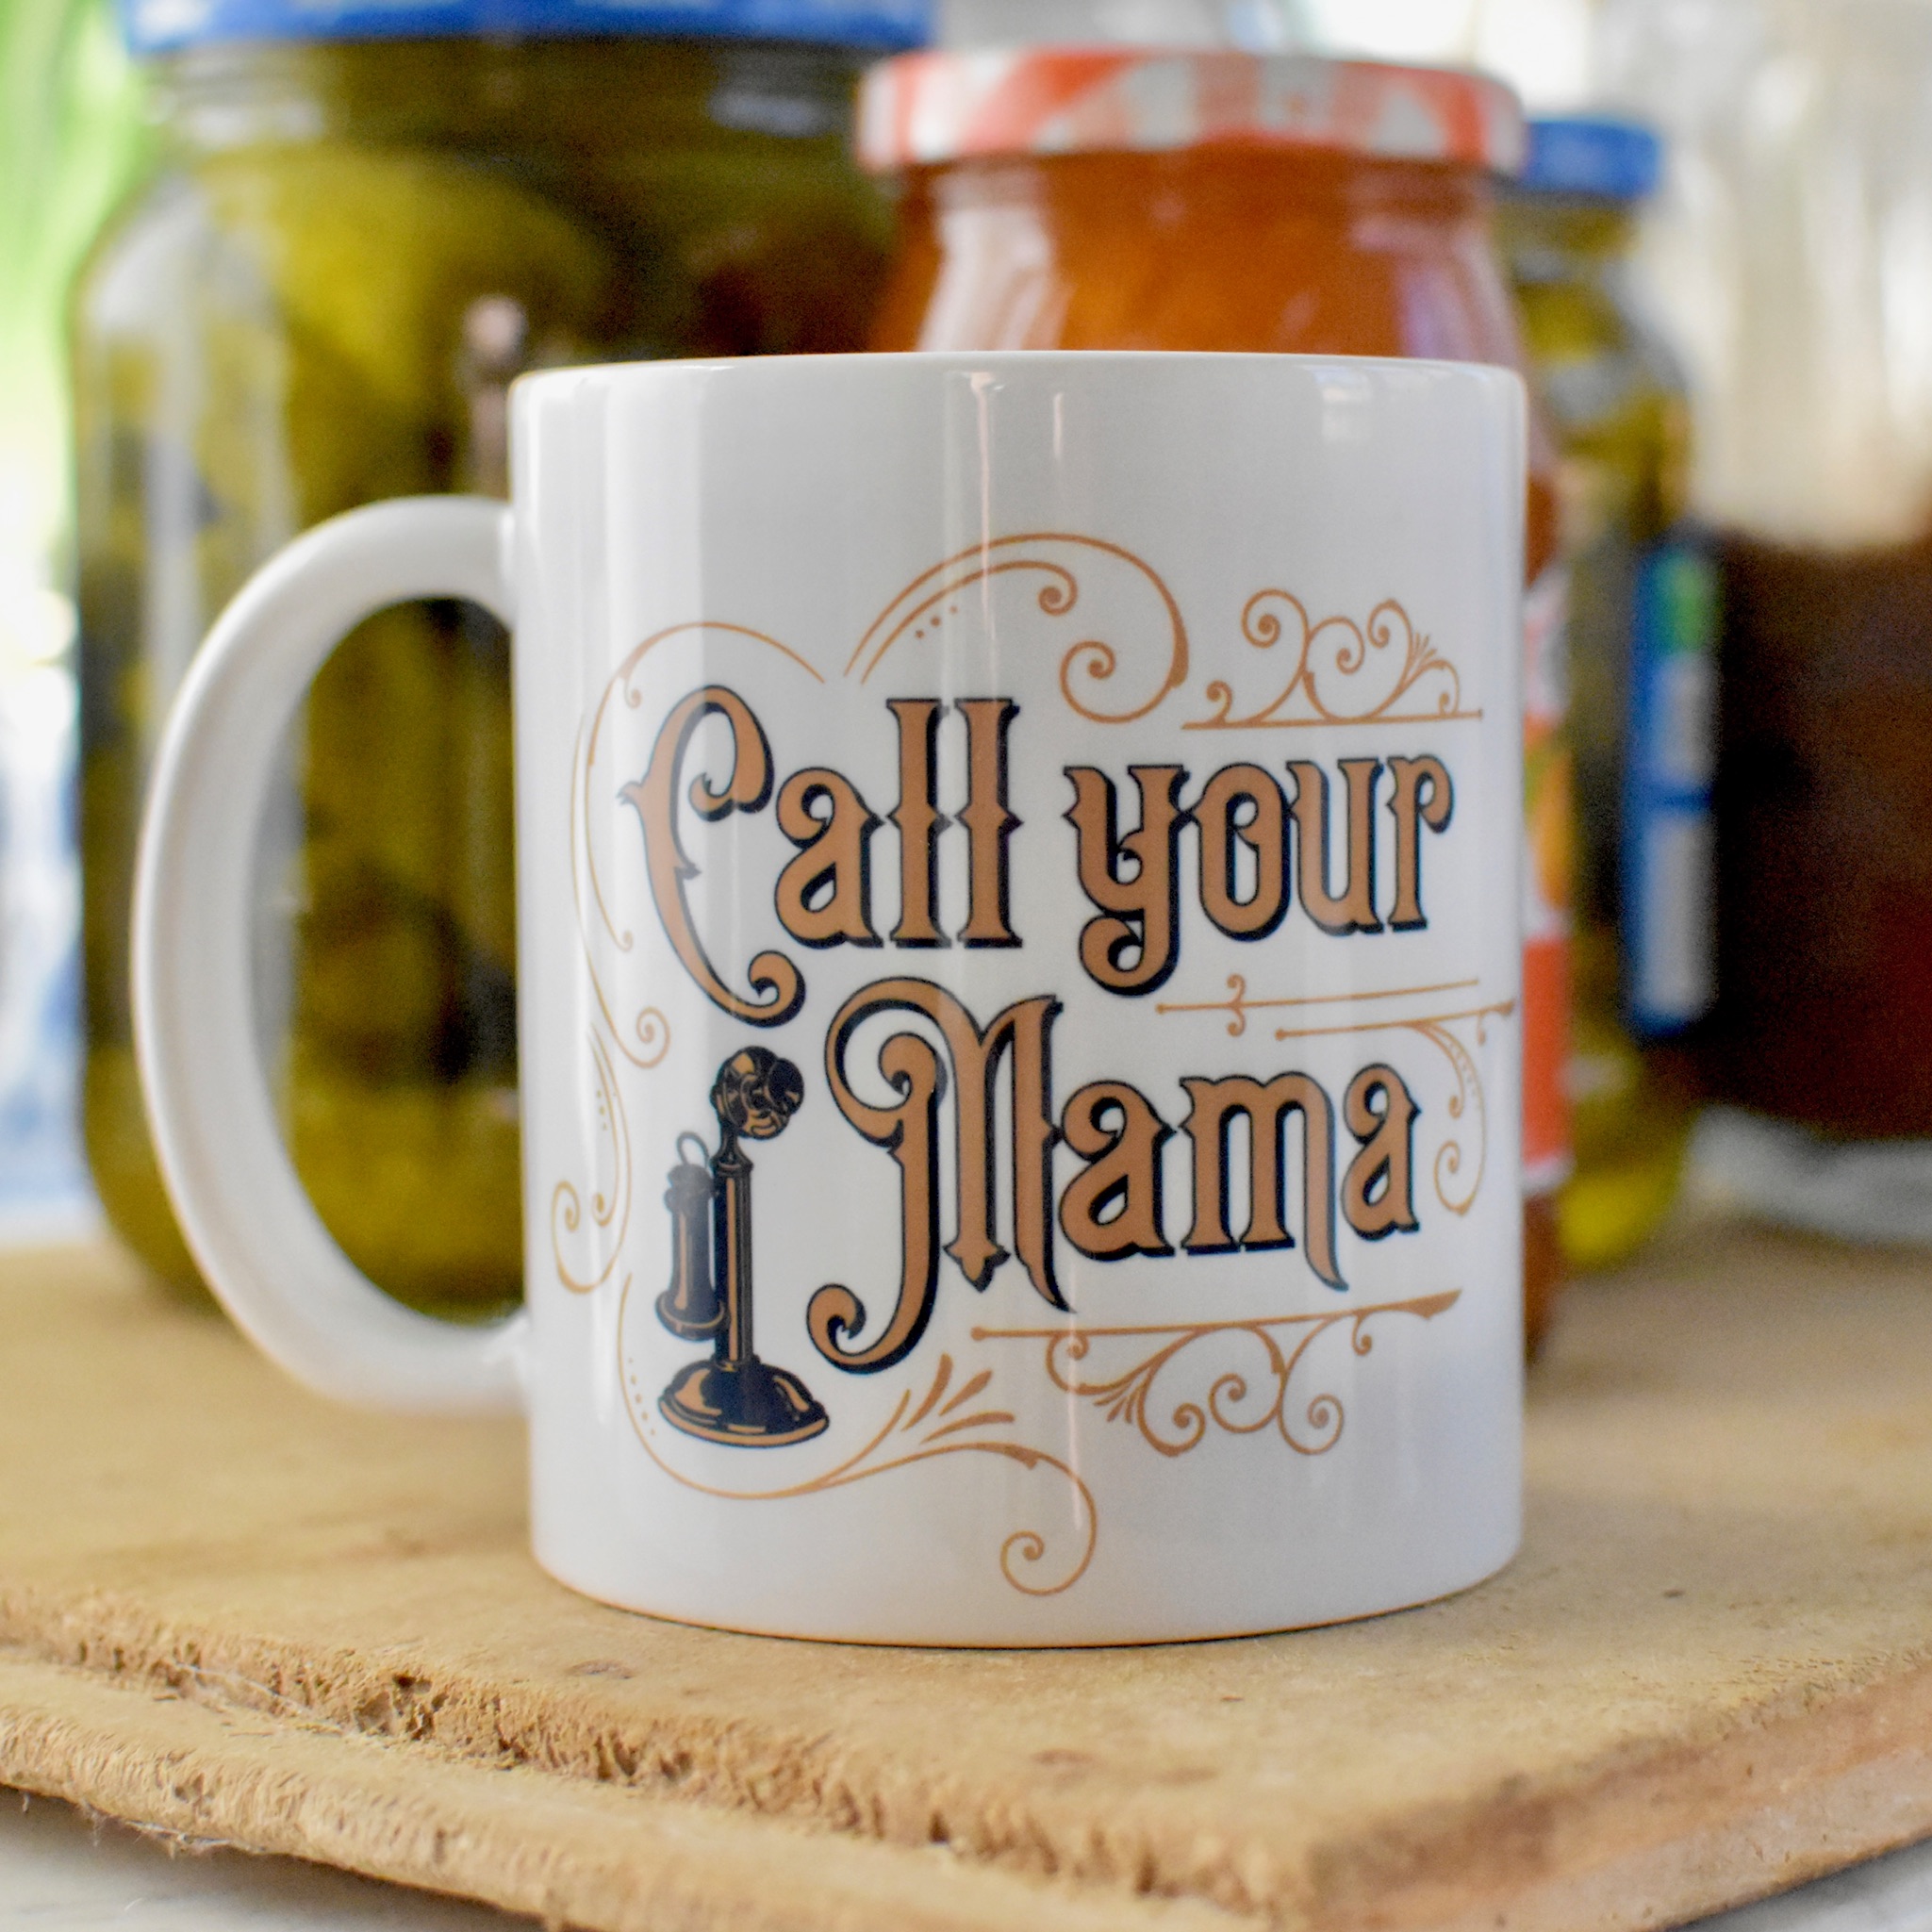 Call Your Mama mug